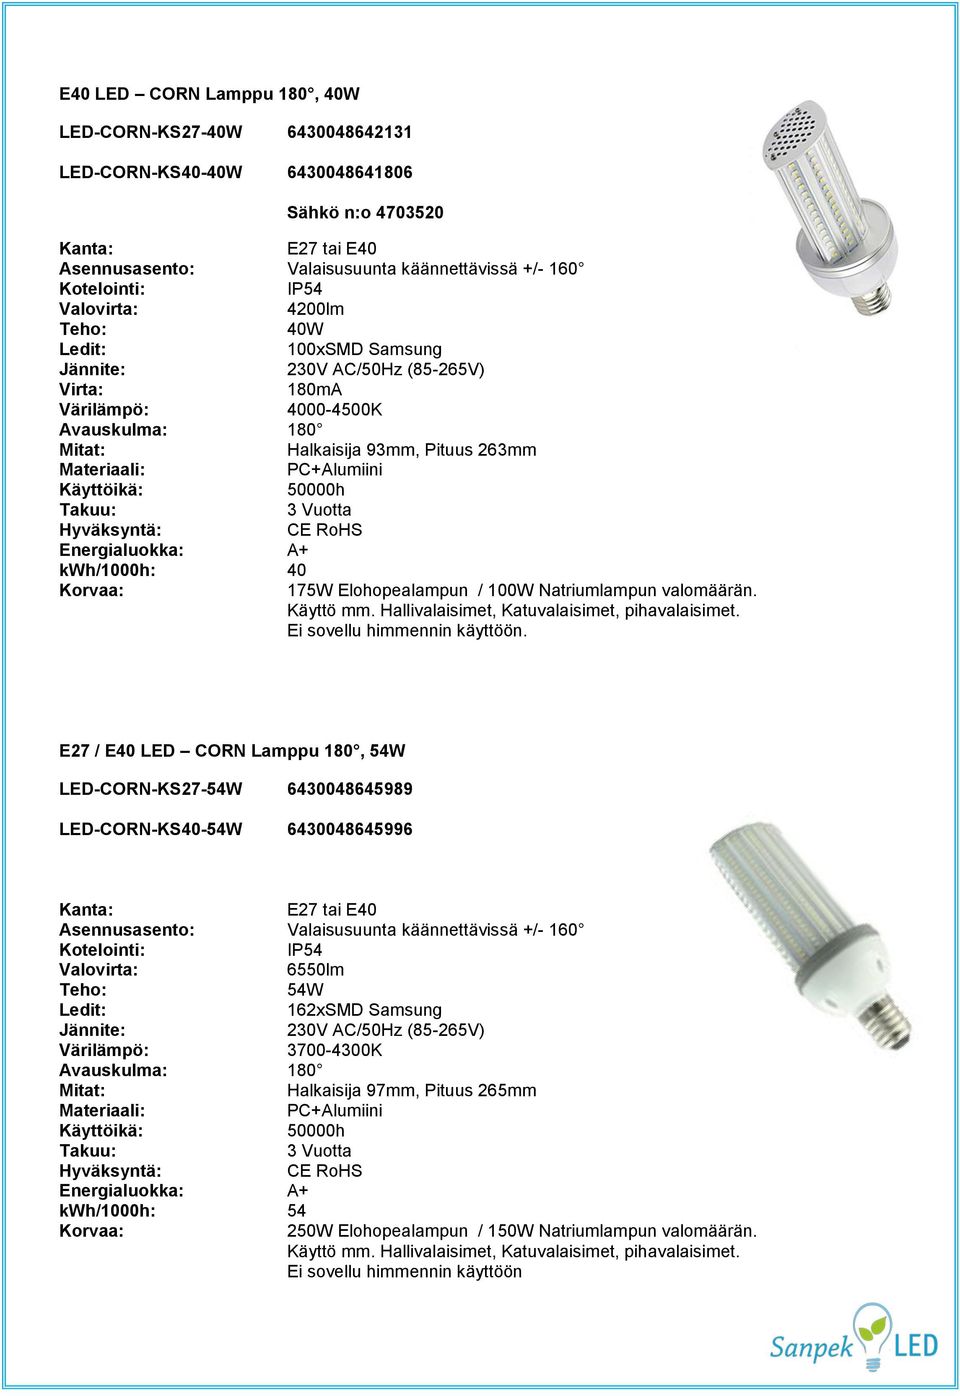 Käyttöikä: 50000h Takuu: 3 Vuotta Hyväksyntä: CE RoHS Energialuokka: A+ kwh/1000h: 40 Korvaa: 175W Elohopealampun / 100W Natriumlampun valomäärän. Käyttö mm.